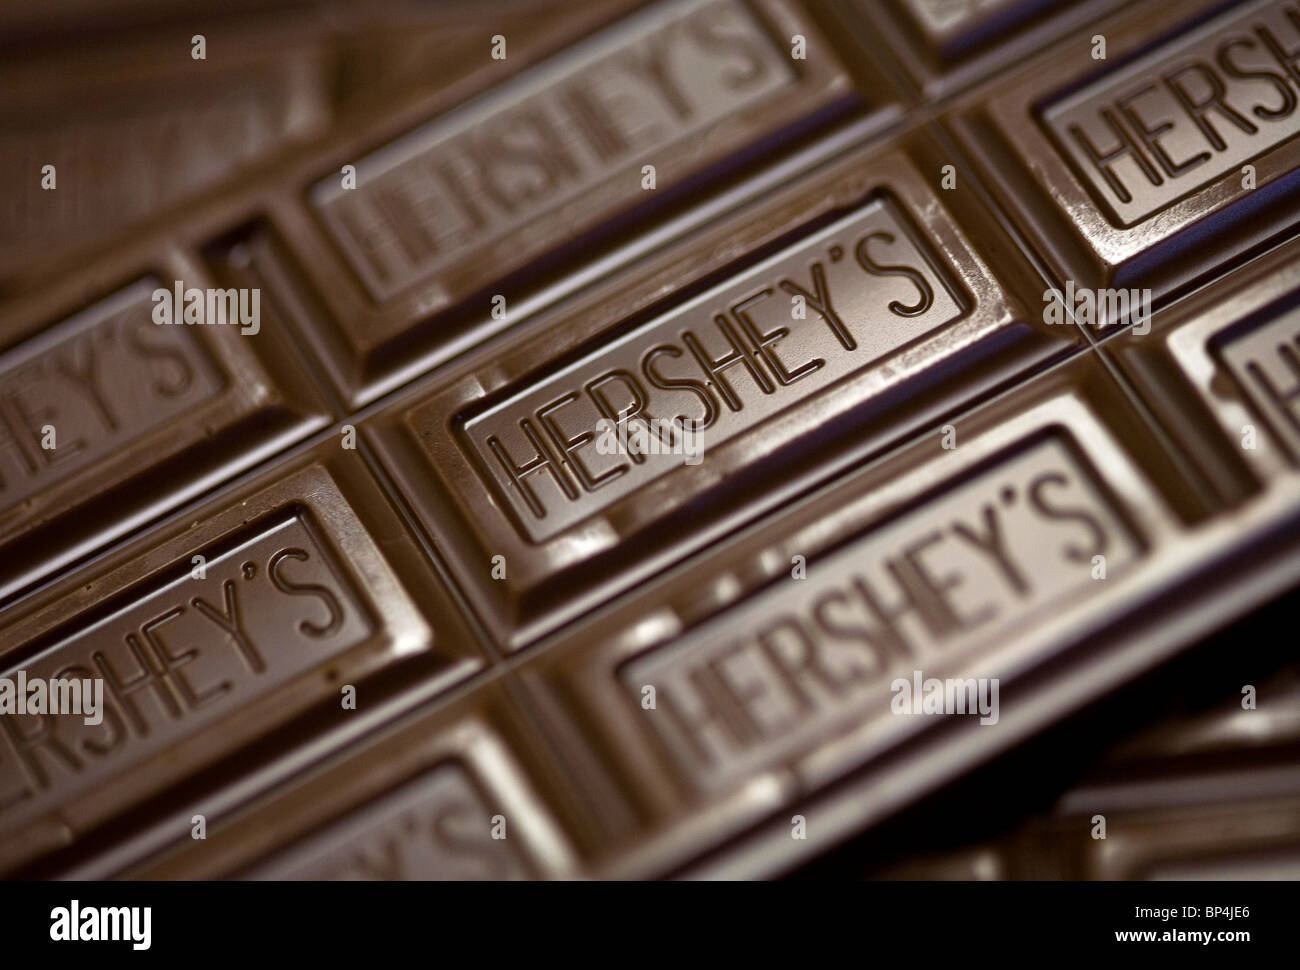 Hershey's Chocolate Bars.  Stock Photo